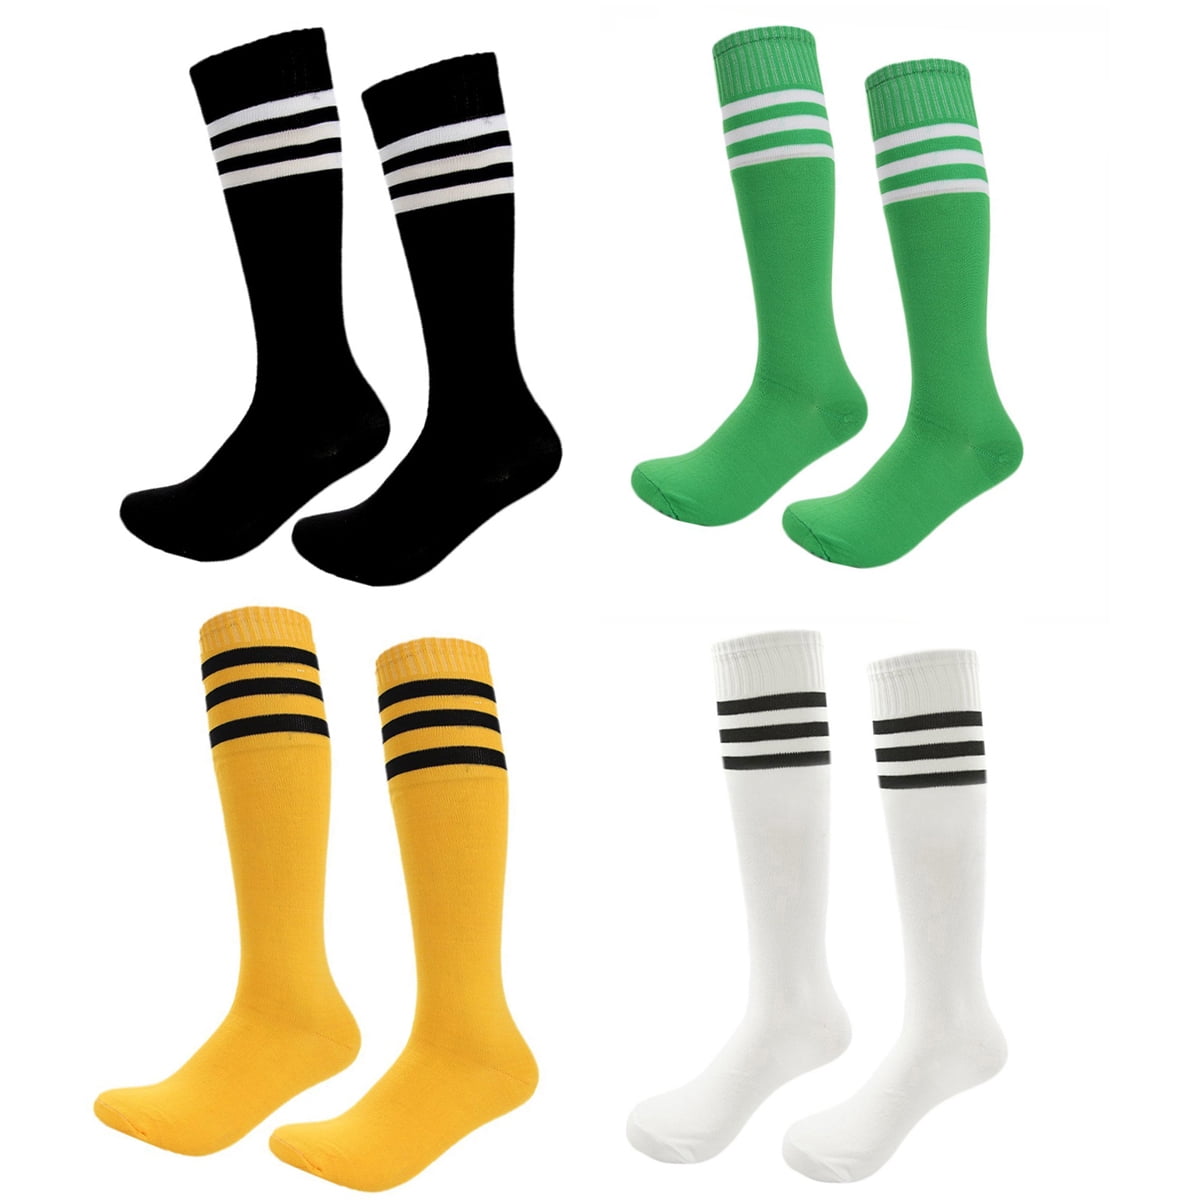 3 Pairs Kids Football Socks, Anti-slip Towel Bottom Socks Long Breathable  Soccer Sock For Rugby, Hockey, Running Or Training For Children Aged 5-12